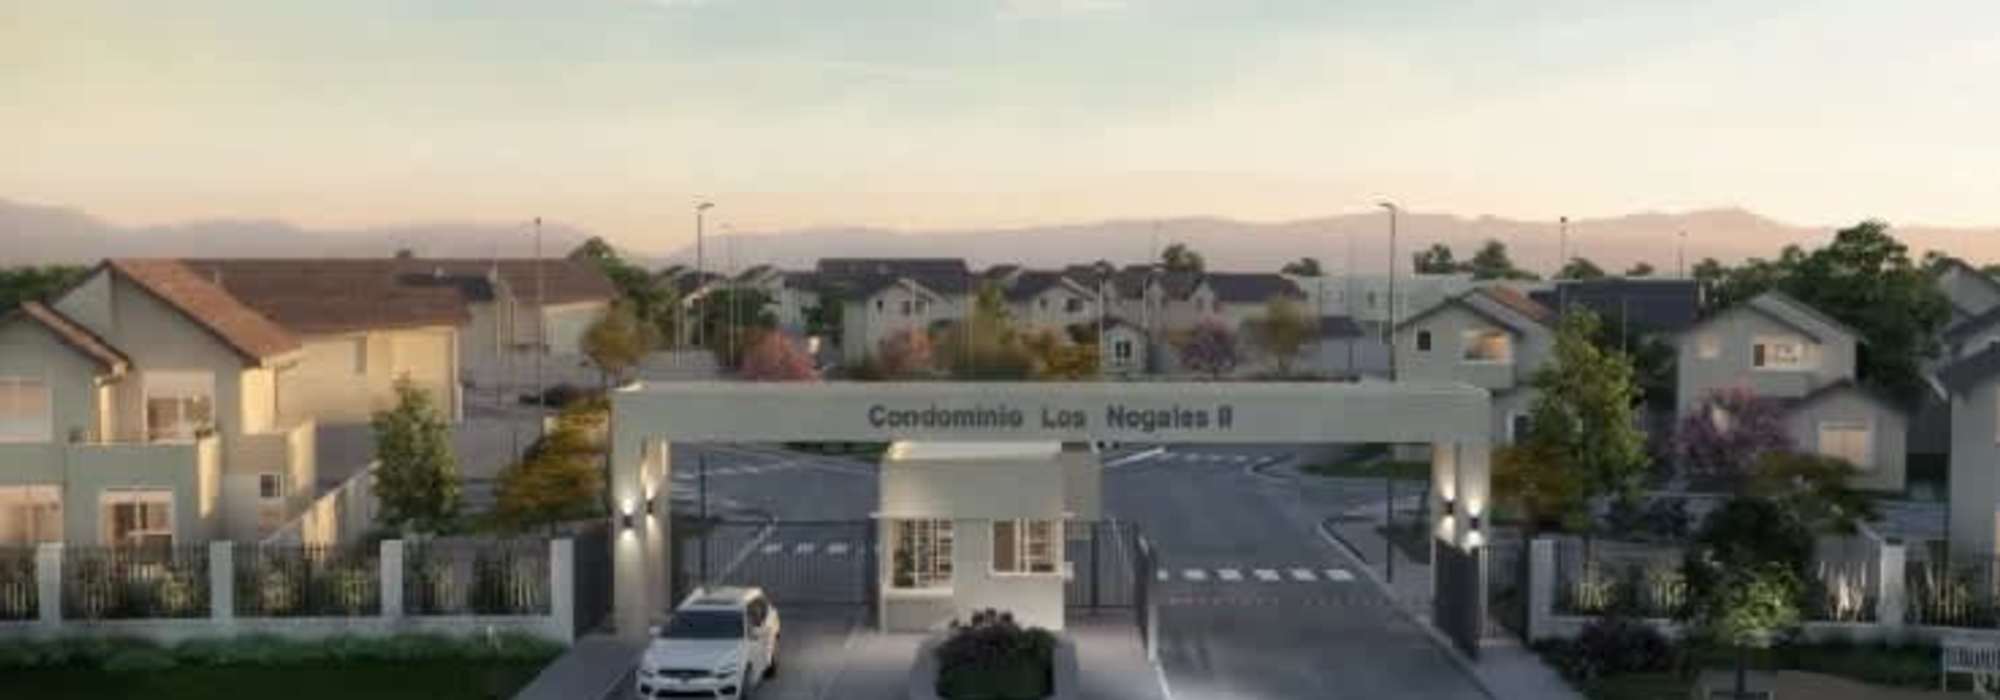 Condominio Los Nogales II